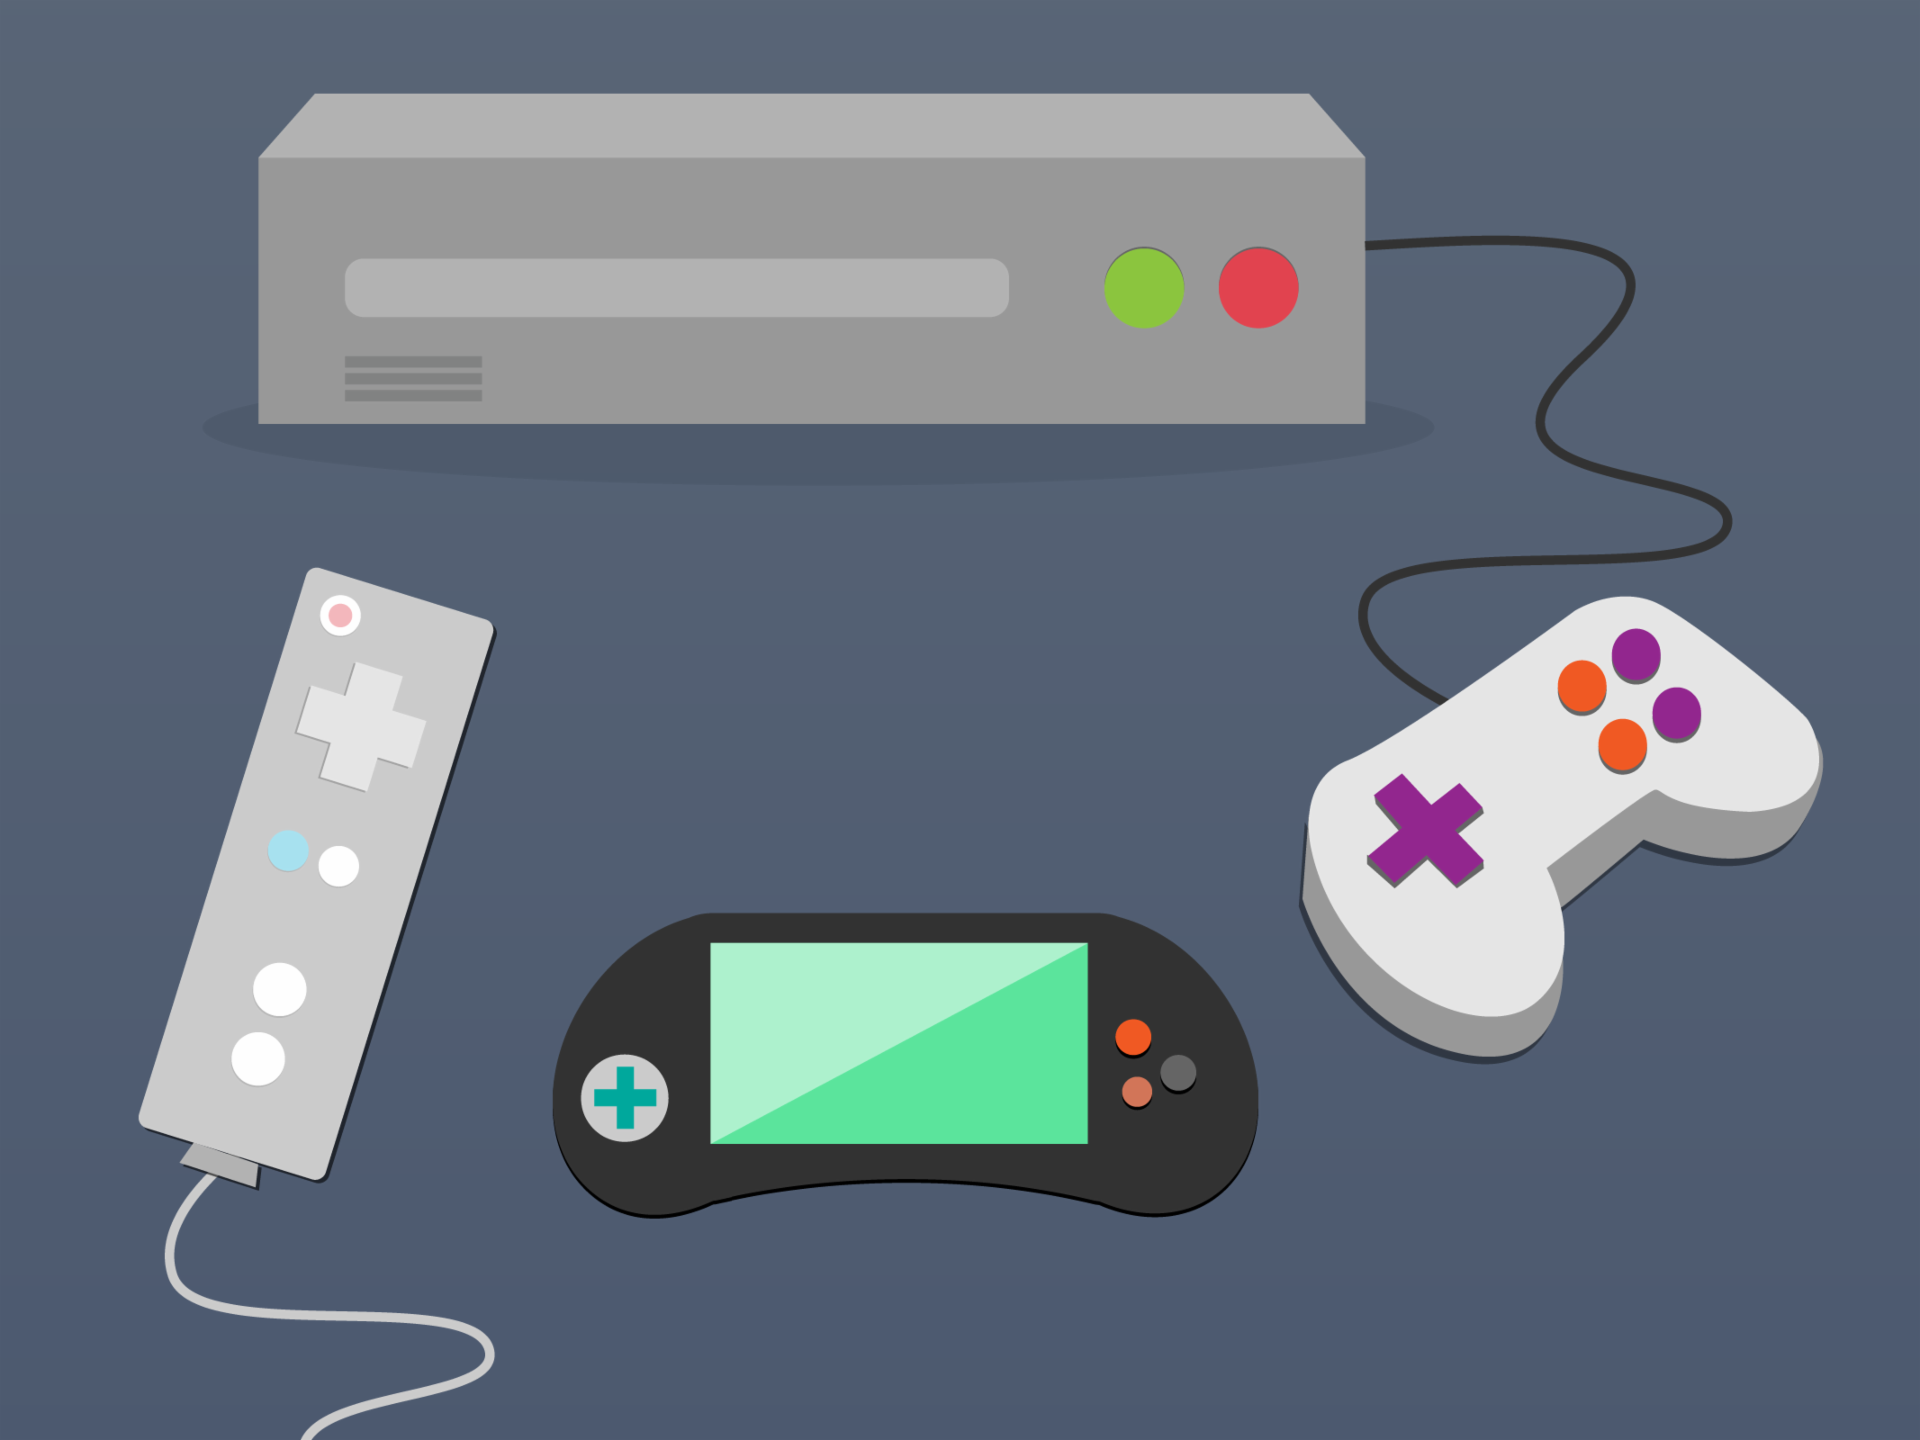 Las consolas de videojuegos más populares son: Play Station, X-Box, Wii.